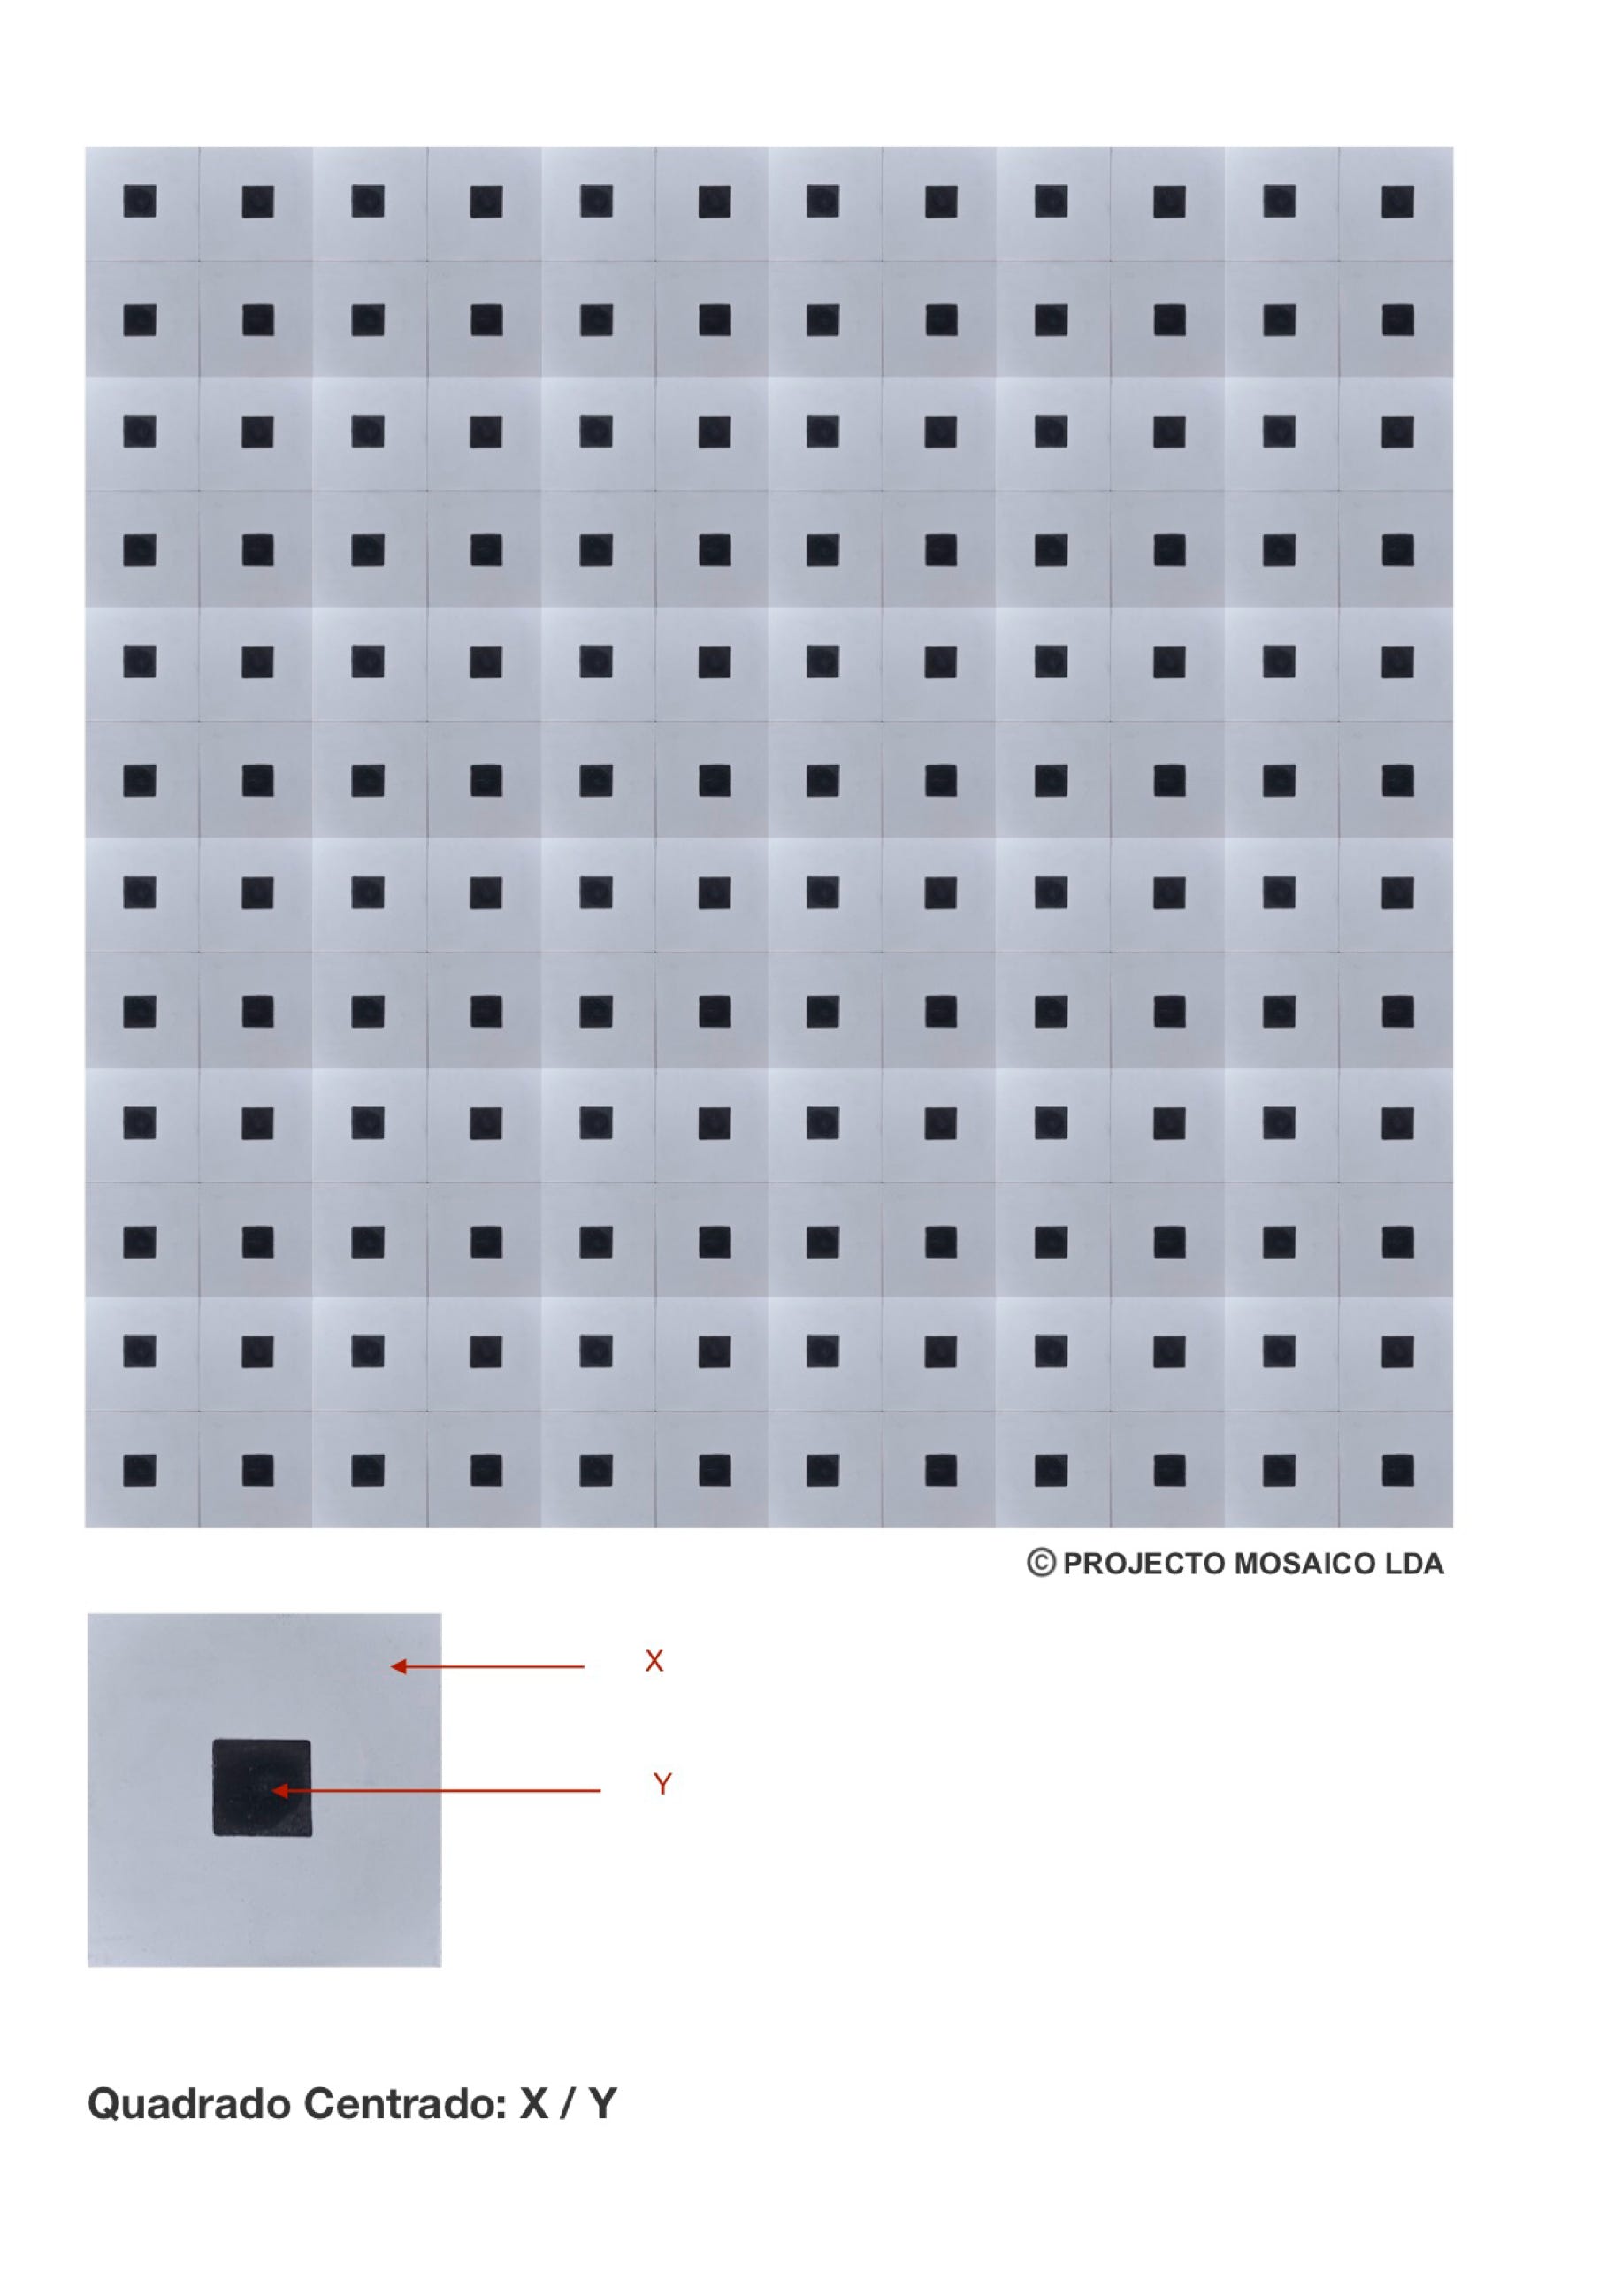 illustração de aplicação do mosaico hidráulico ref: Quadrado Centrado